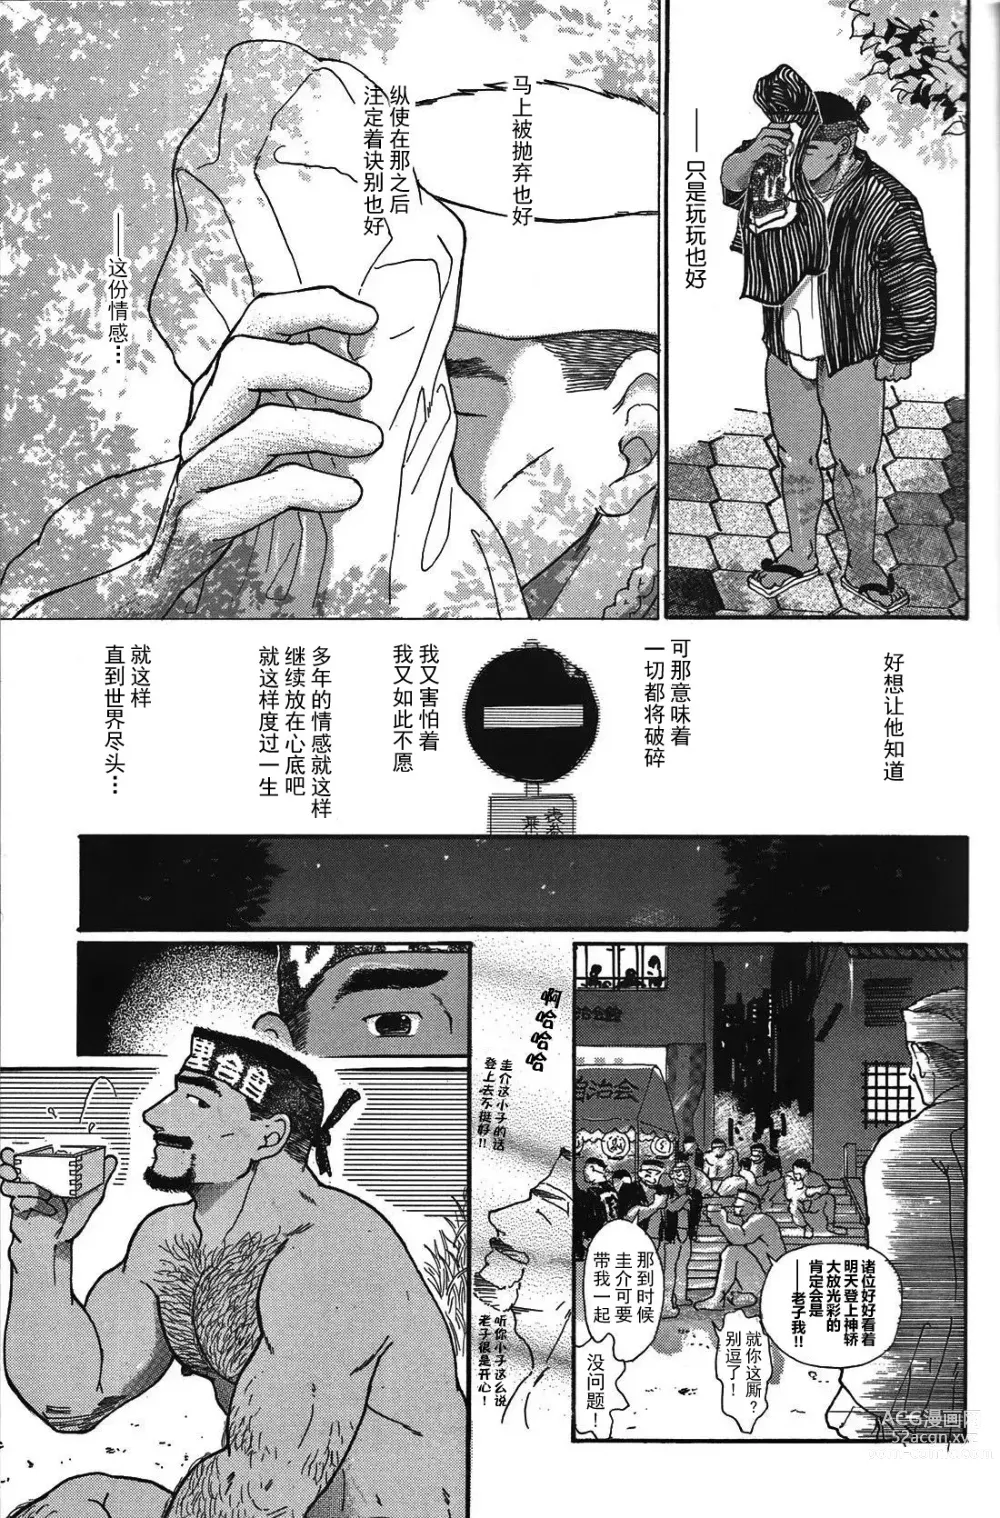 Page 14 of manga 纯情-第一章-纯情!!